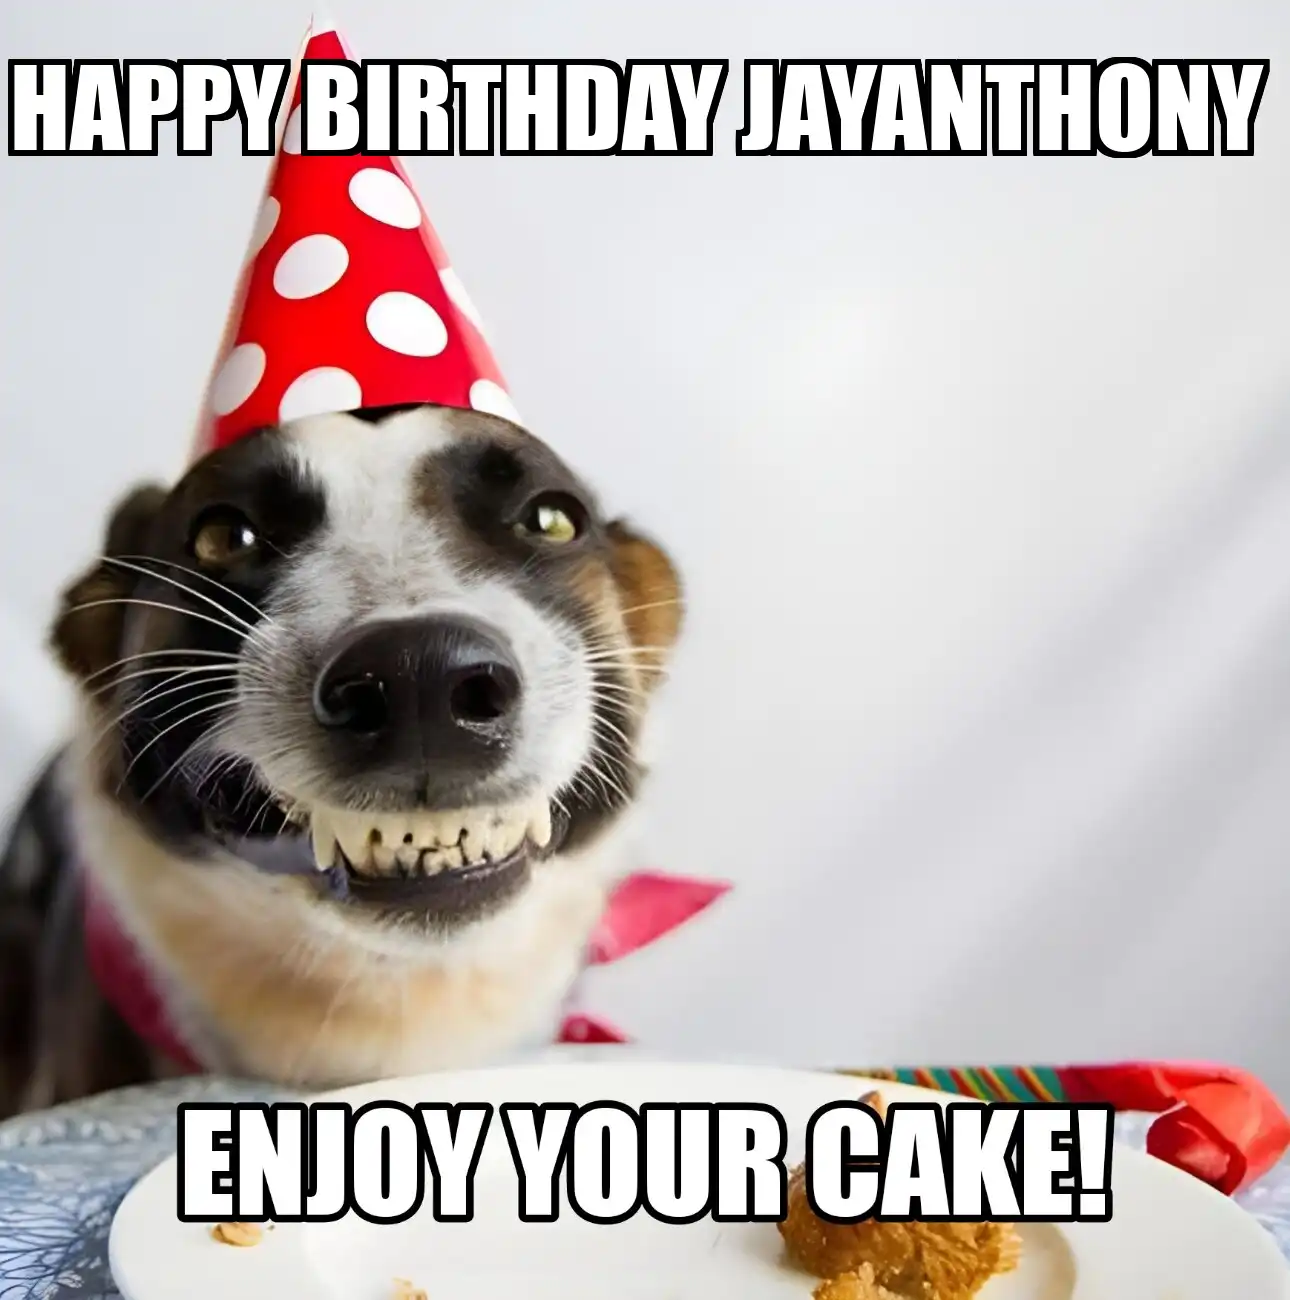 Happy Birthday Jayanthony Enjoy Your Cake Dog Meme